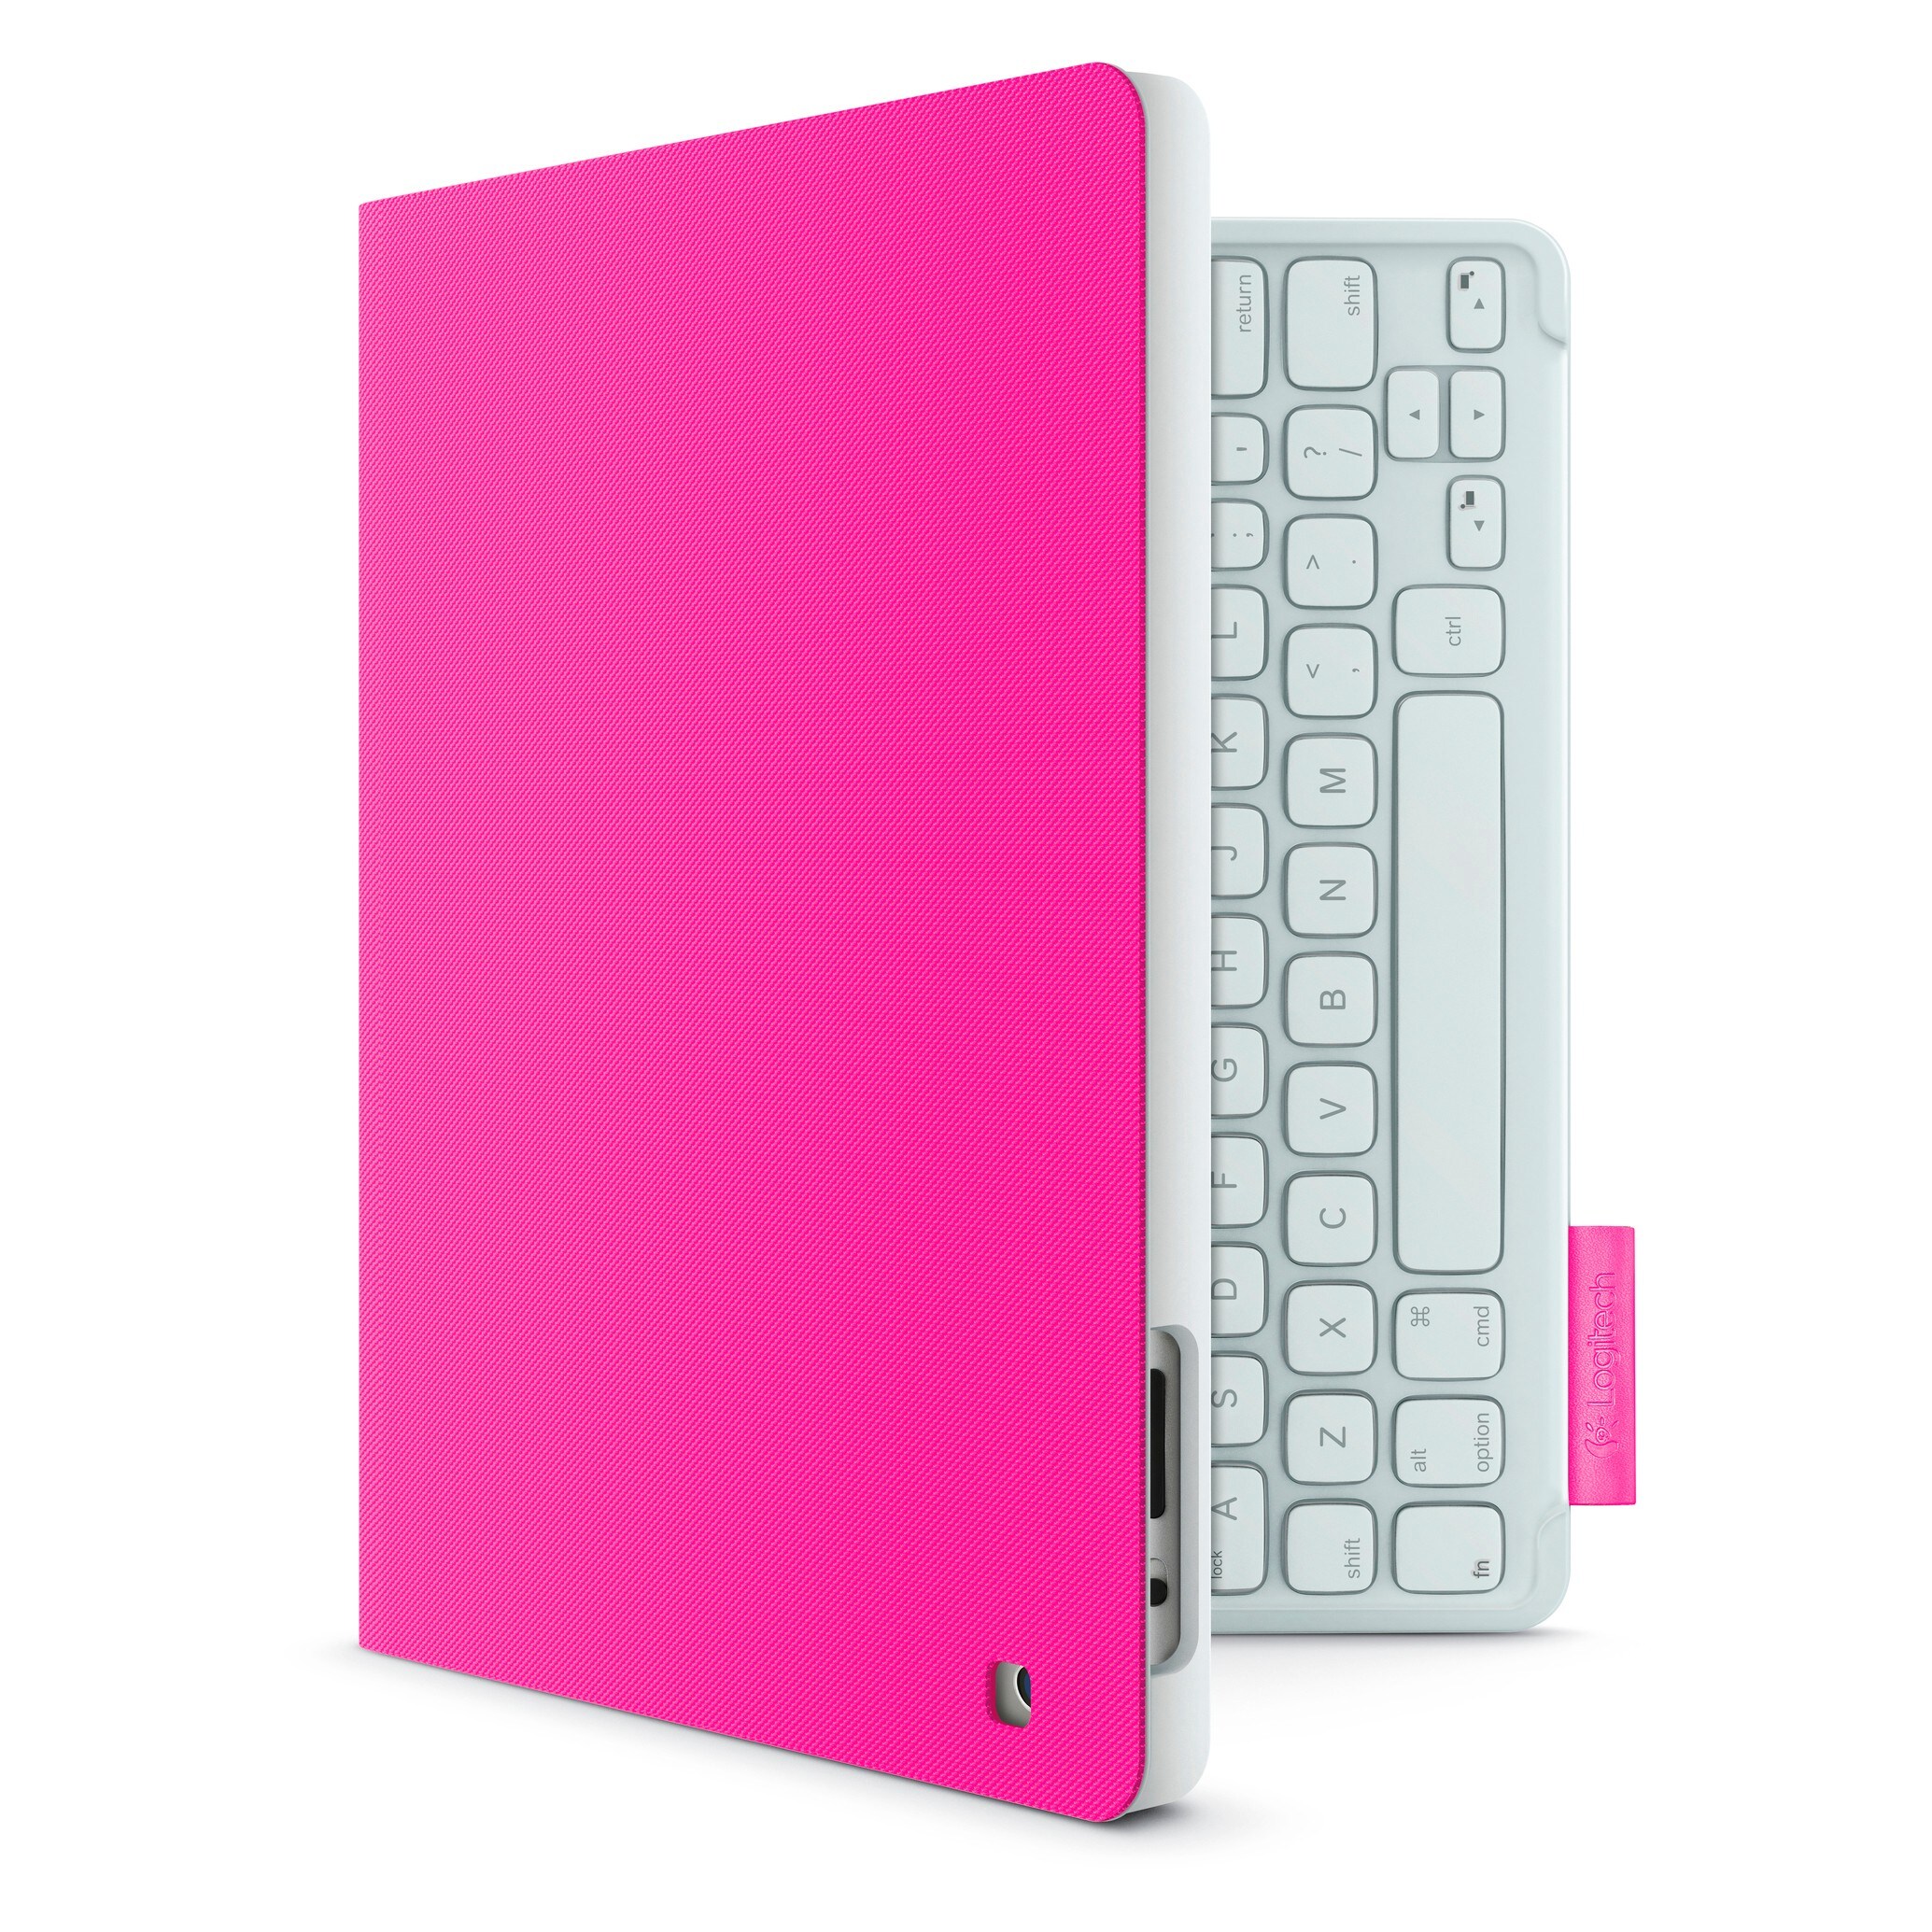 Logitech deksel m. tastatur for iPad 2, 3 +4 gen (rosa) - Tilbehør iPad og  nettbrett - Elkjøp